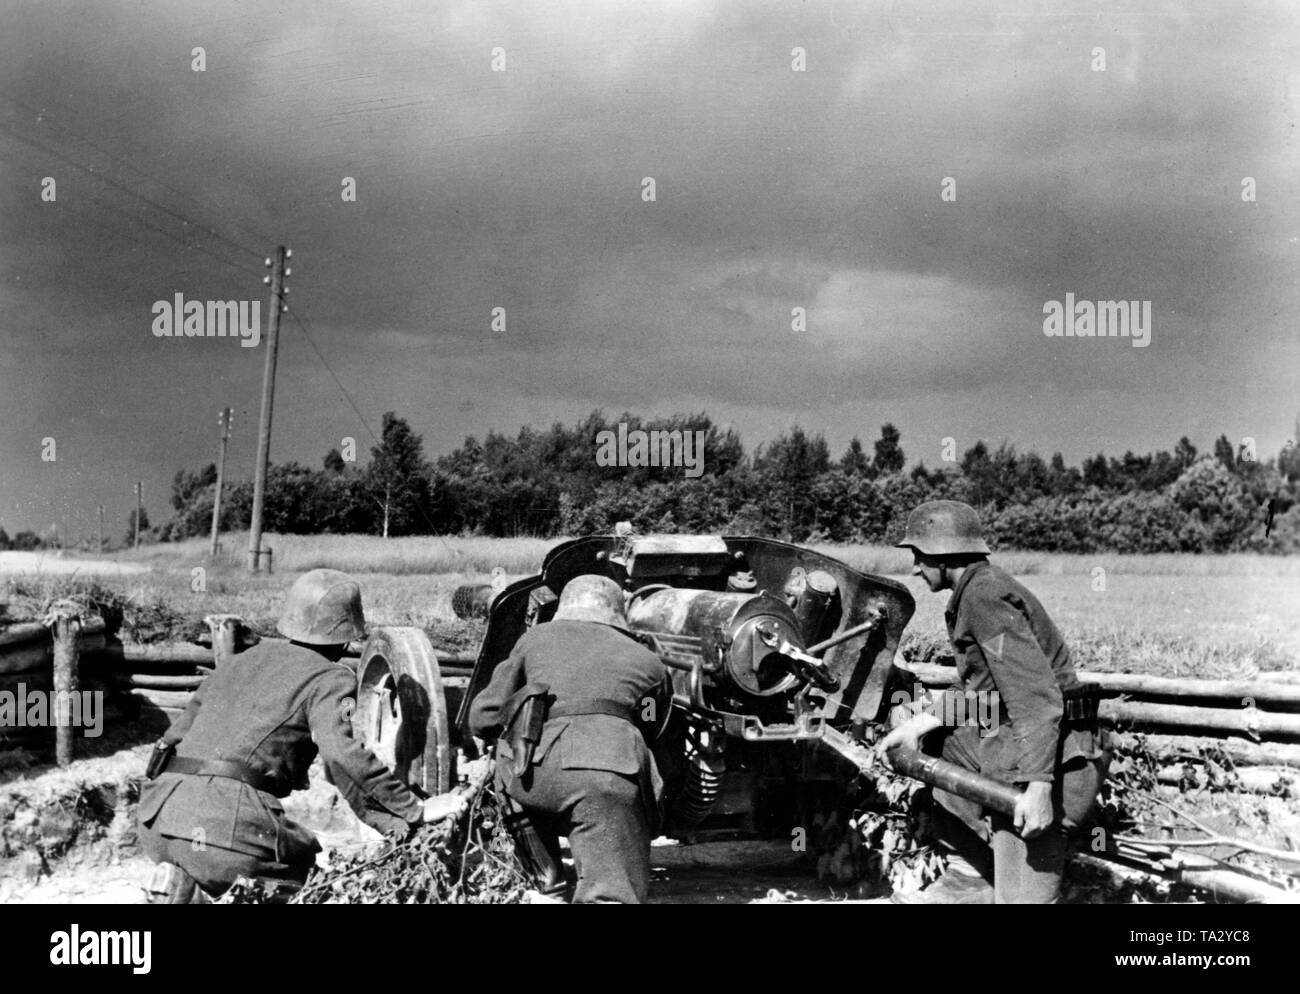 Un arma antitanque alemana (7.5 cm Pak 97/38) en una posición cerca de la ciudad de Lithuanian-Latvian Birsen en la frontera. En el curso de la operación Bagration, la Wehrmacht fue empujado lejos hacia el oeste en el verano de 1944. En los Estados Bálticos, las unidades alemanas fueron capaces de mantener relativamente largo. Foto de la Propaganda Company (PK): El corresponsal de guerra Schwoon. Foto de stock